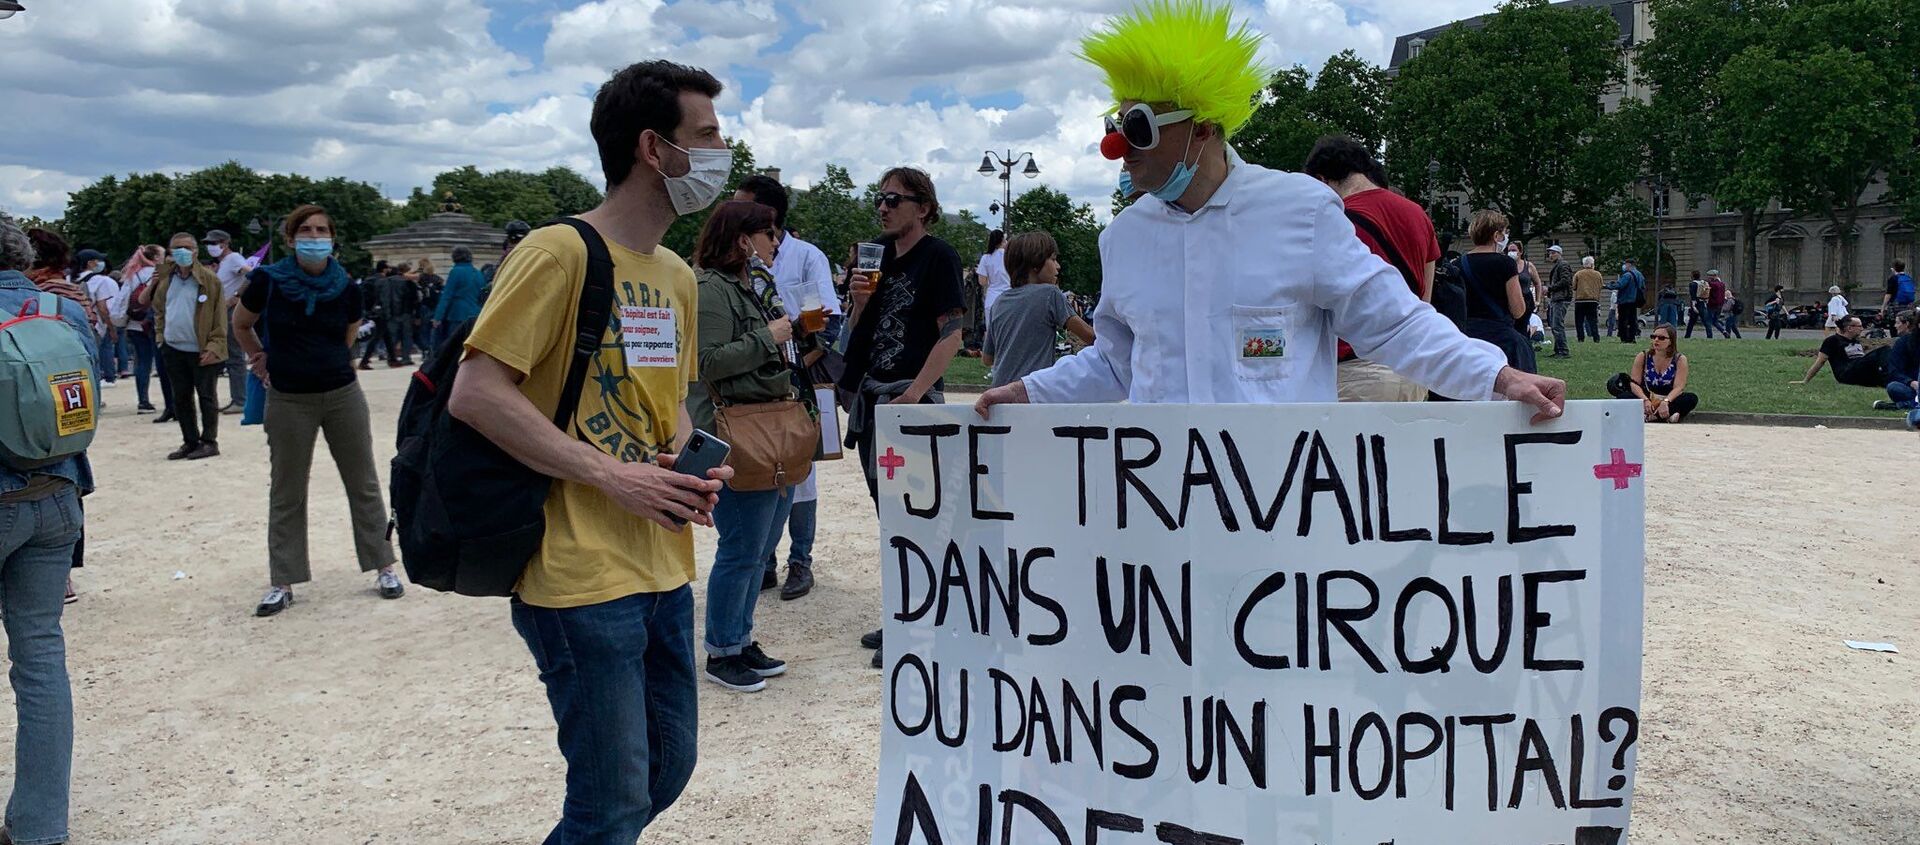 مظاهرات الأطباء يطالبون بتحسين شروط العمل في باريس، فرنسا 16 يونيو 2020 - سبوتنيك عربي, 1920, 14.08.2021